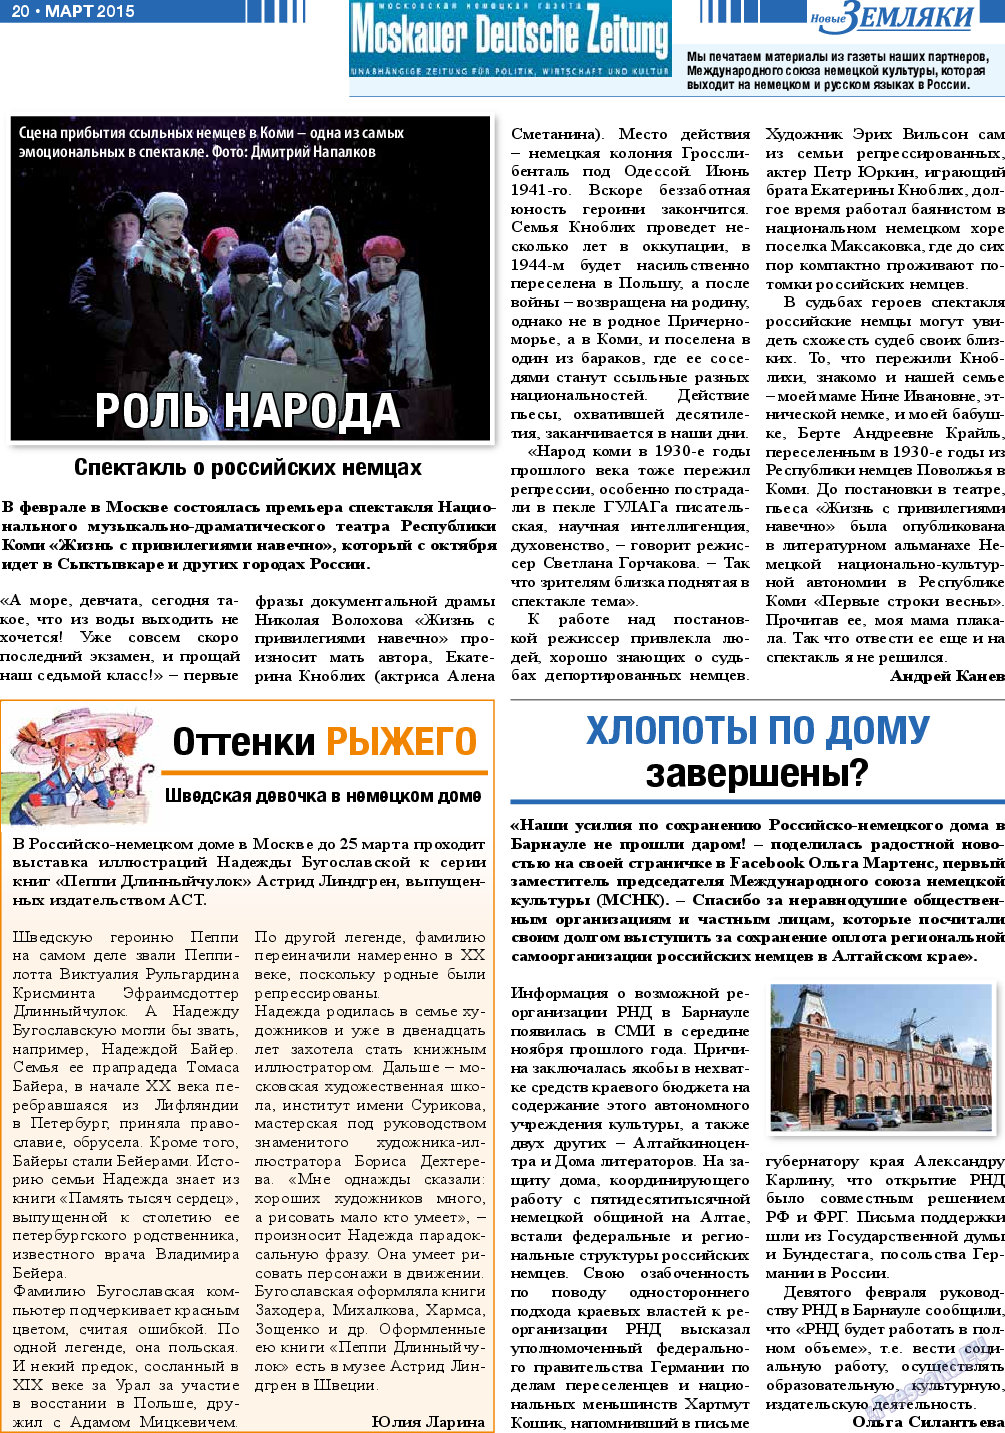 Новые Земляки, газета. 2015 №3 стр.20